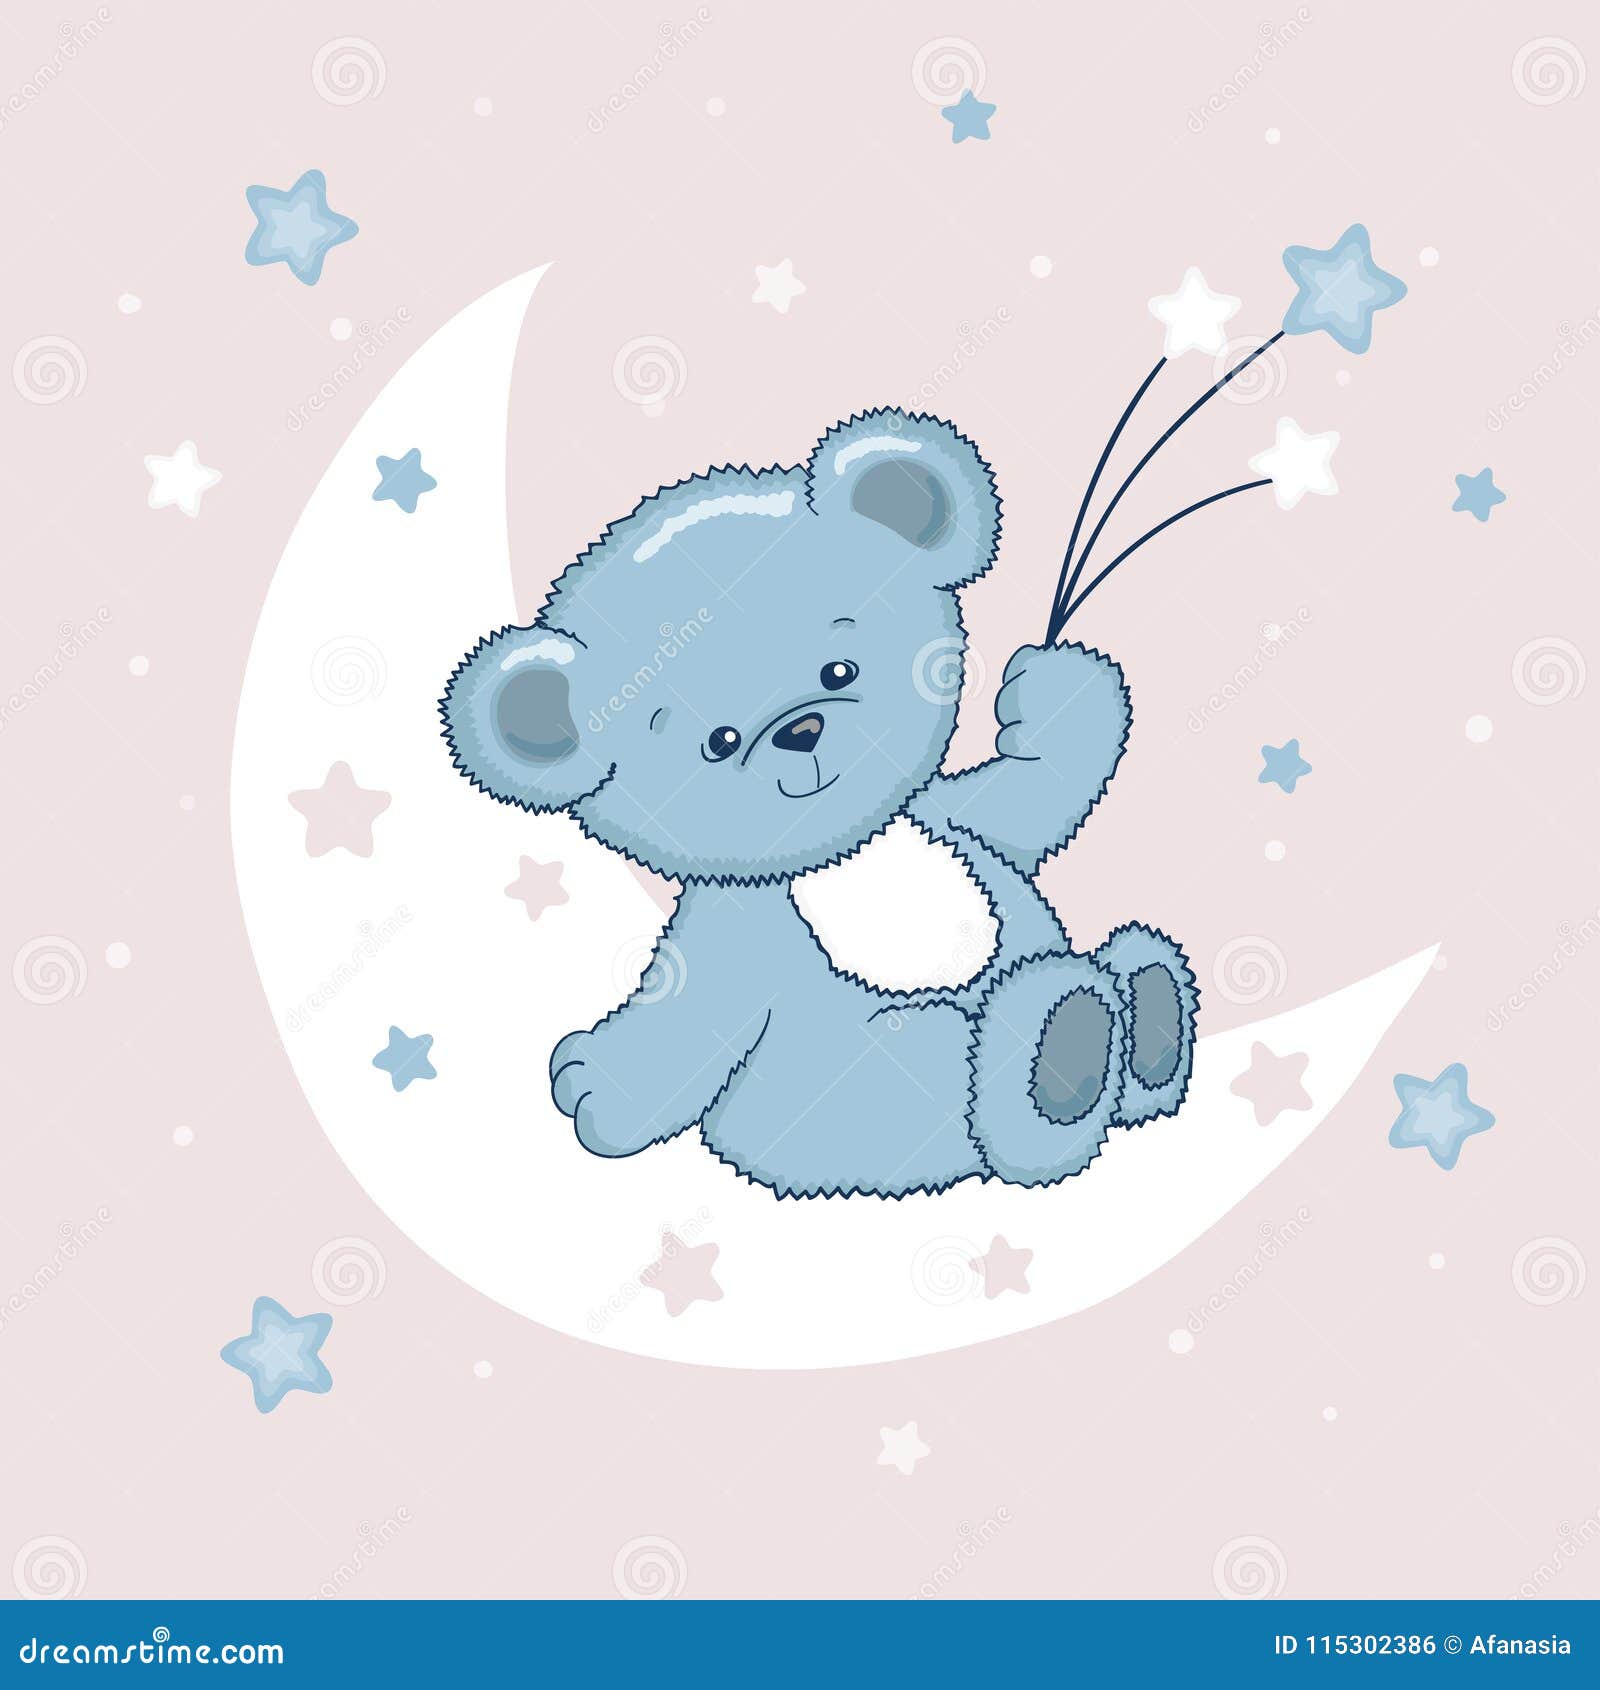 Cute Teddy Bear on the Moon. Sweet Dreams Stock Vector ...